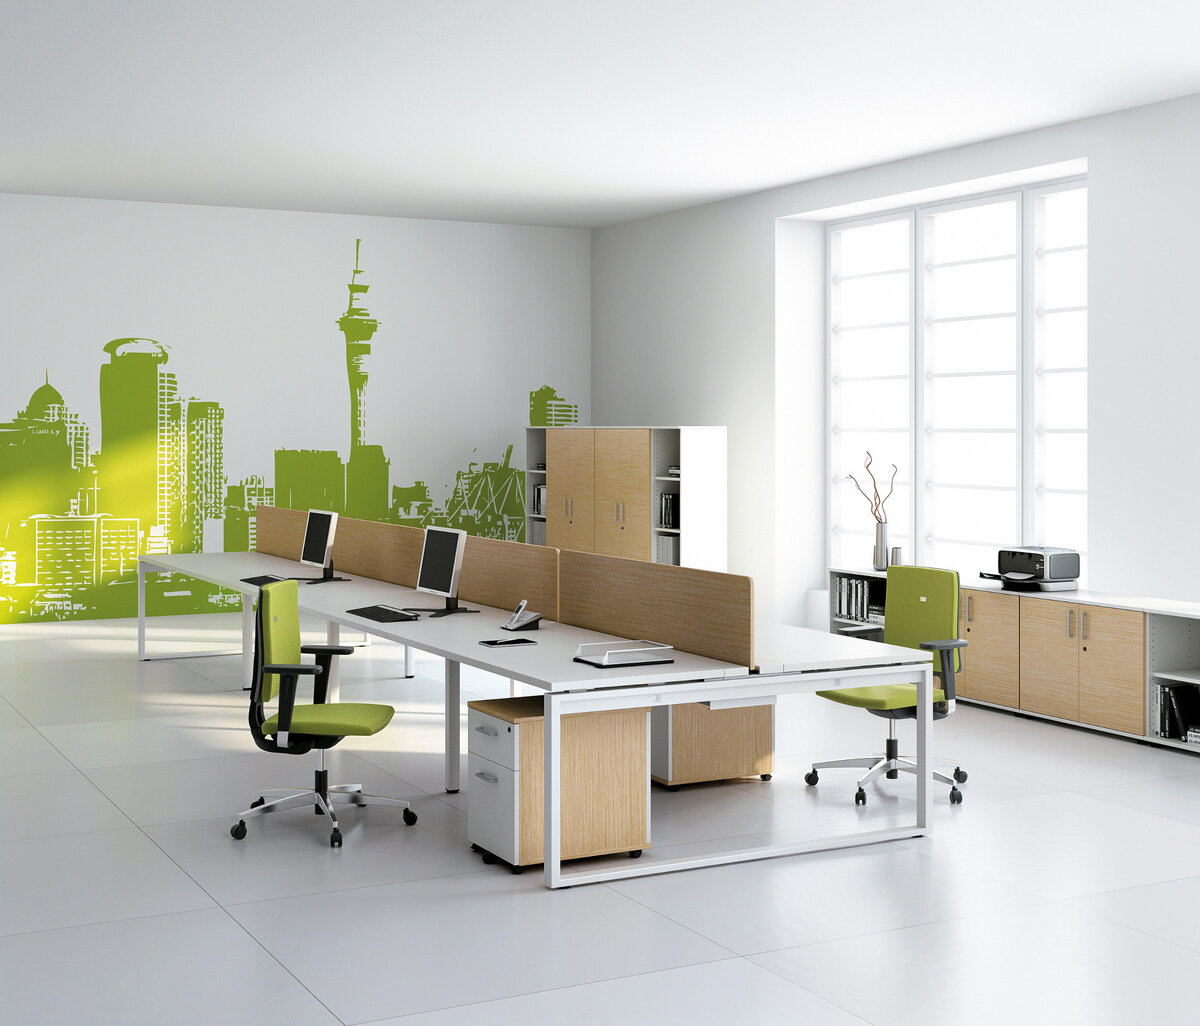 Офисов и т д. Мебель для опен Спейс помещений. Цветовые решения для офиса опен Спейс. Опен Спейс офис зеленый. Офисный интерьер.